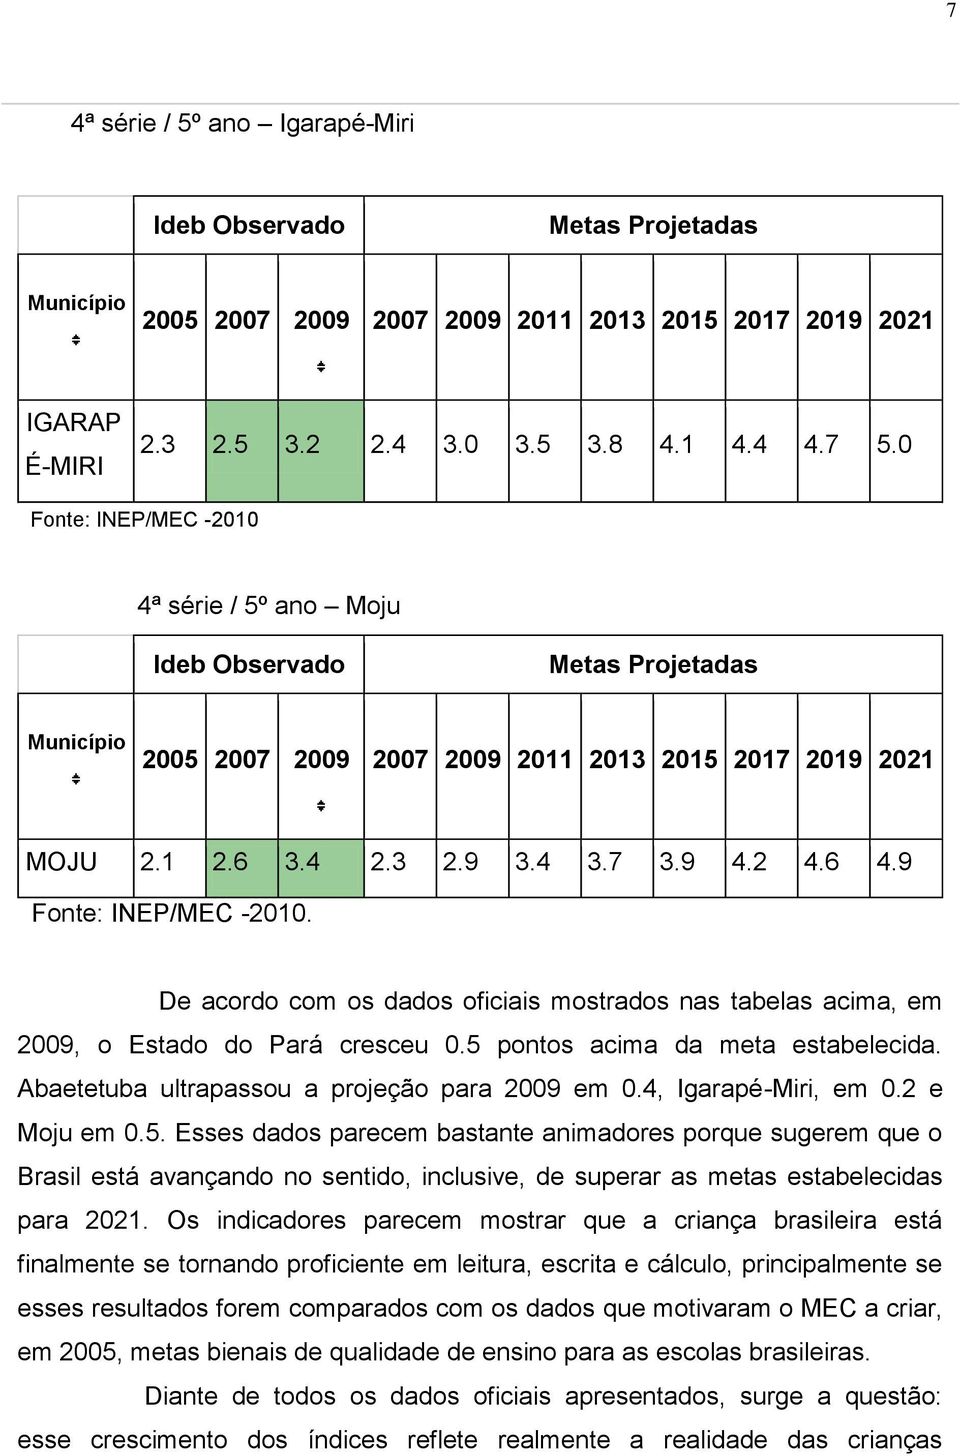 De acordo com os dados oficiais mostrados nas tabelas acima, em 009, o Estado do Pará cresceu 0.5 pontos acima da meta estabelecida. Abaetetuba ultrapassou a projeção para 009 em 0.